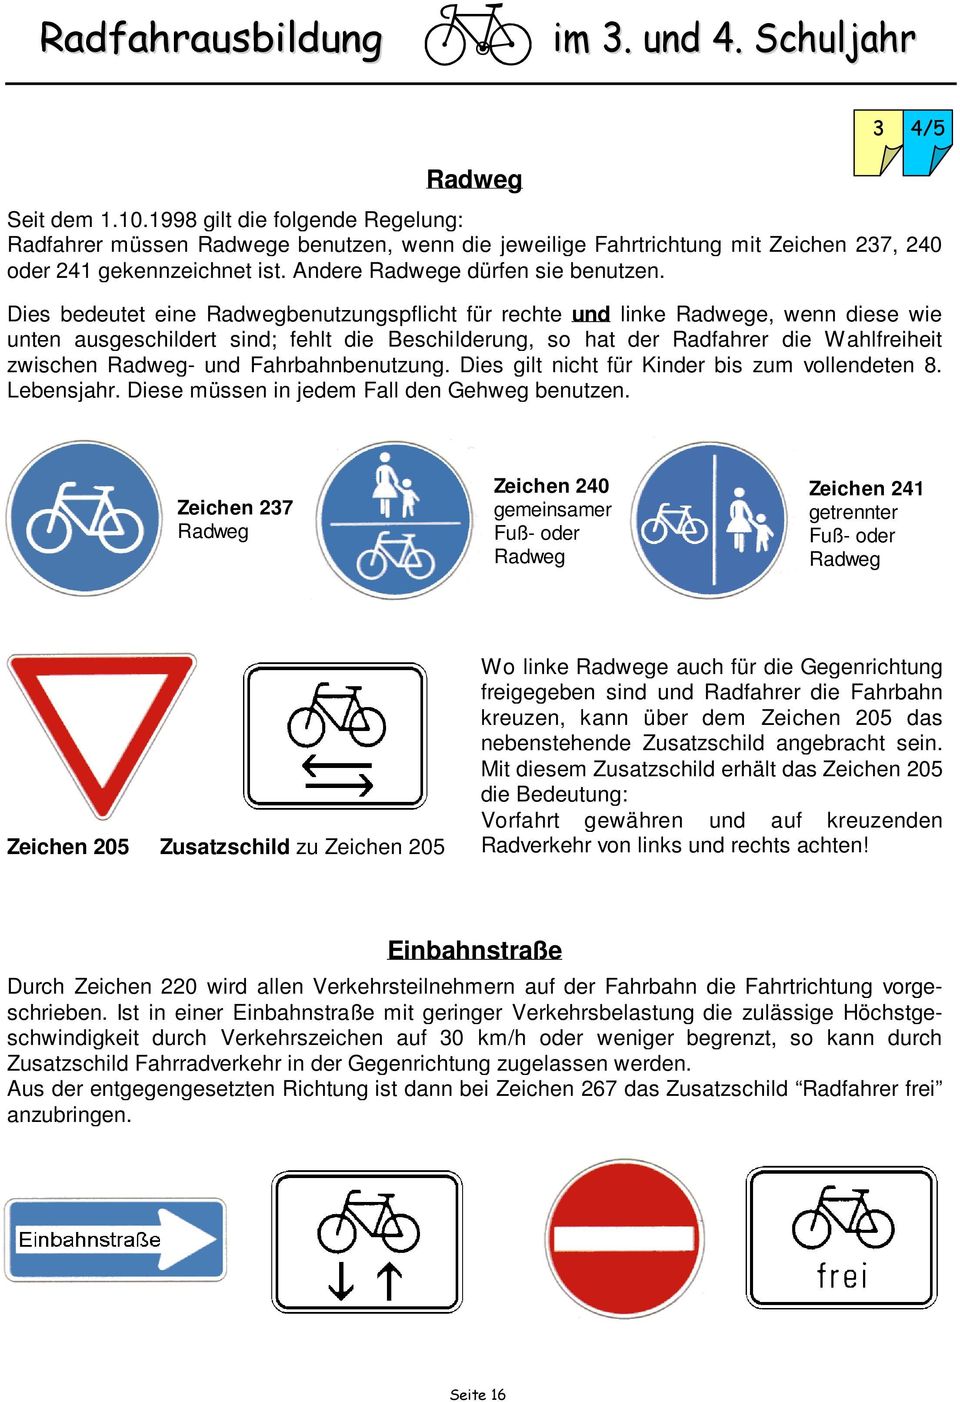 Dies bedeutet eine Radwegbenutzungspflicht für rechte und linke Radwege, wenn diese wie unten ausgeschildert sind; fehlt die Beschilderung, so hat der Radfahrer die Wahlfreiheit zwischen Radweg- und